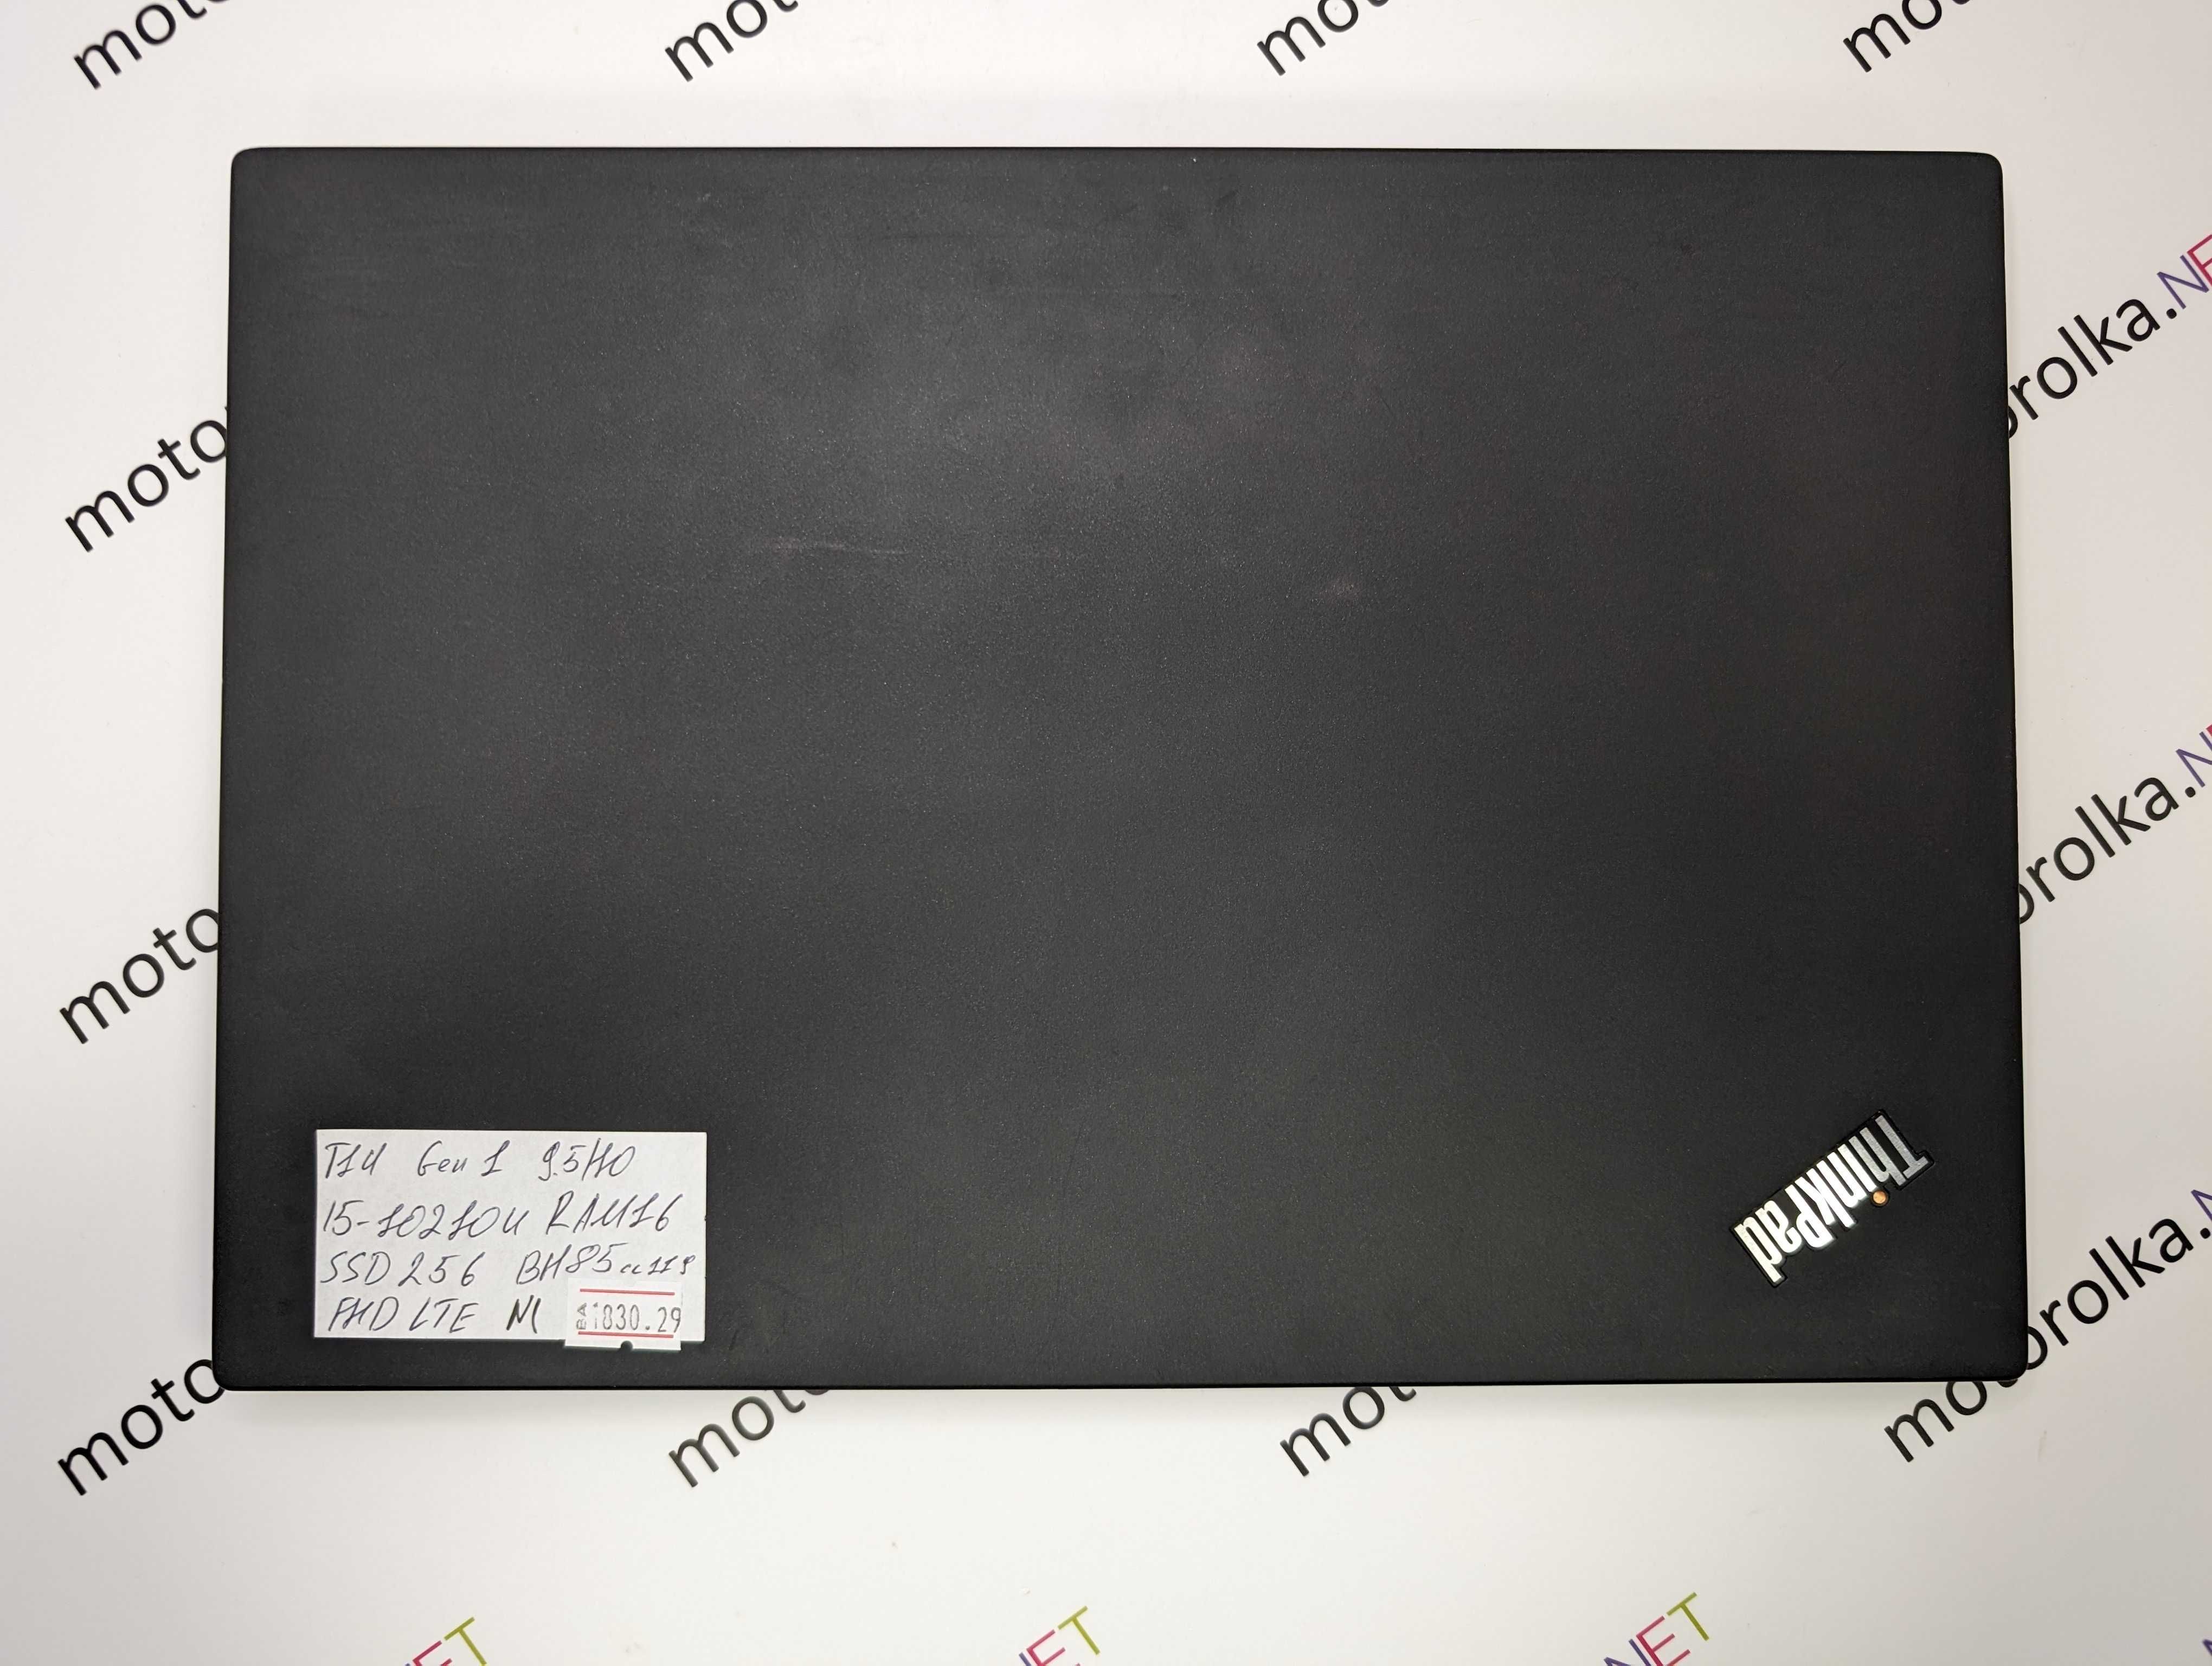 Ноутбук Lenovo ThinkPad T14 Gen 1 14" FullHD/i5-10210u/16 RAM/256 №1